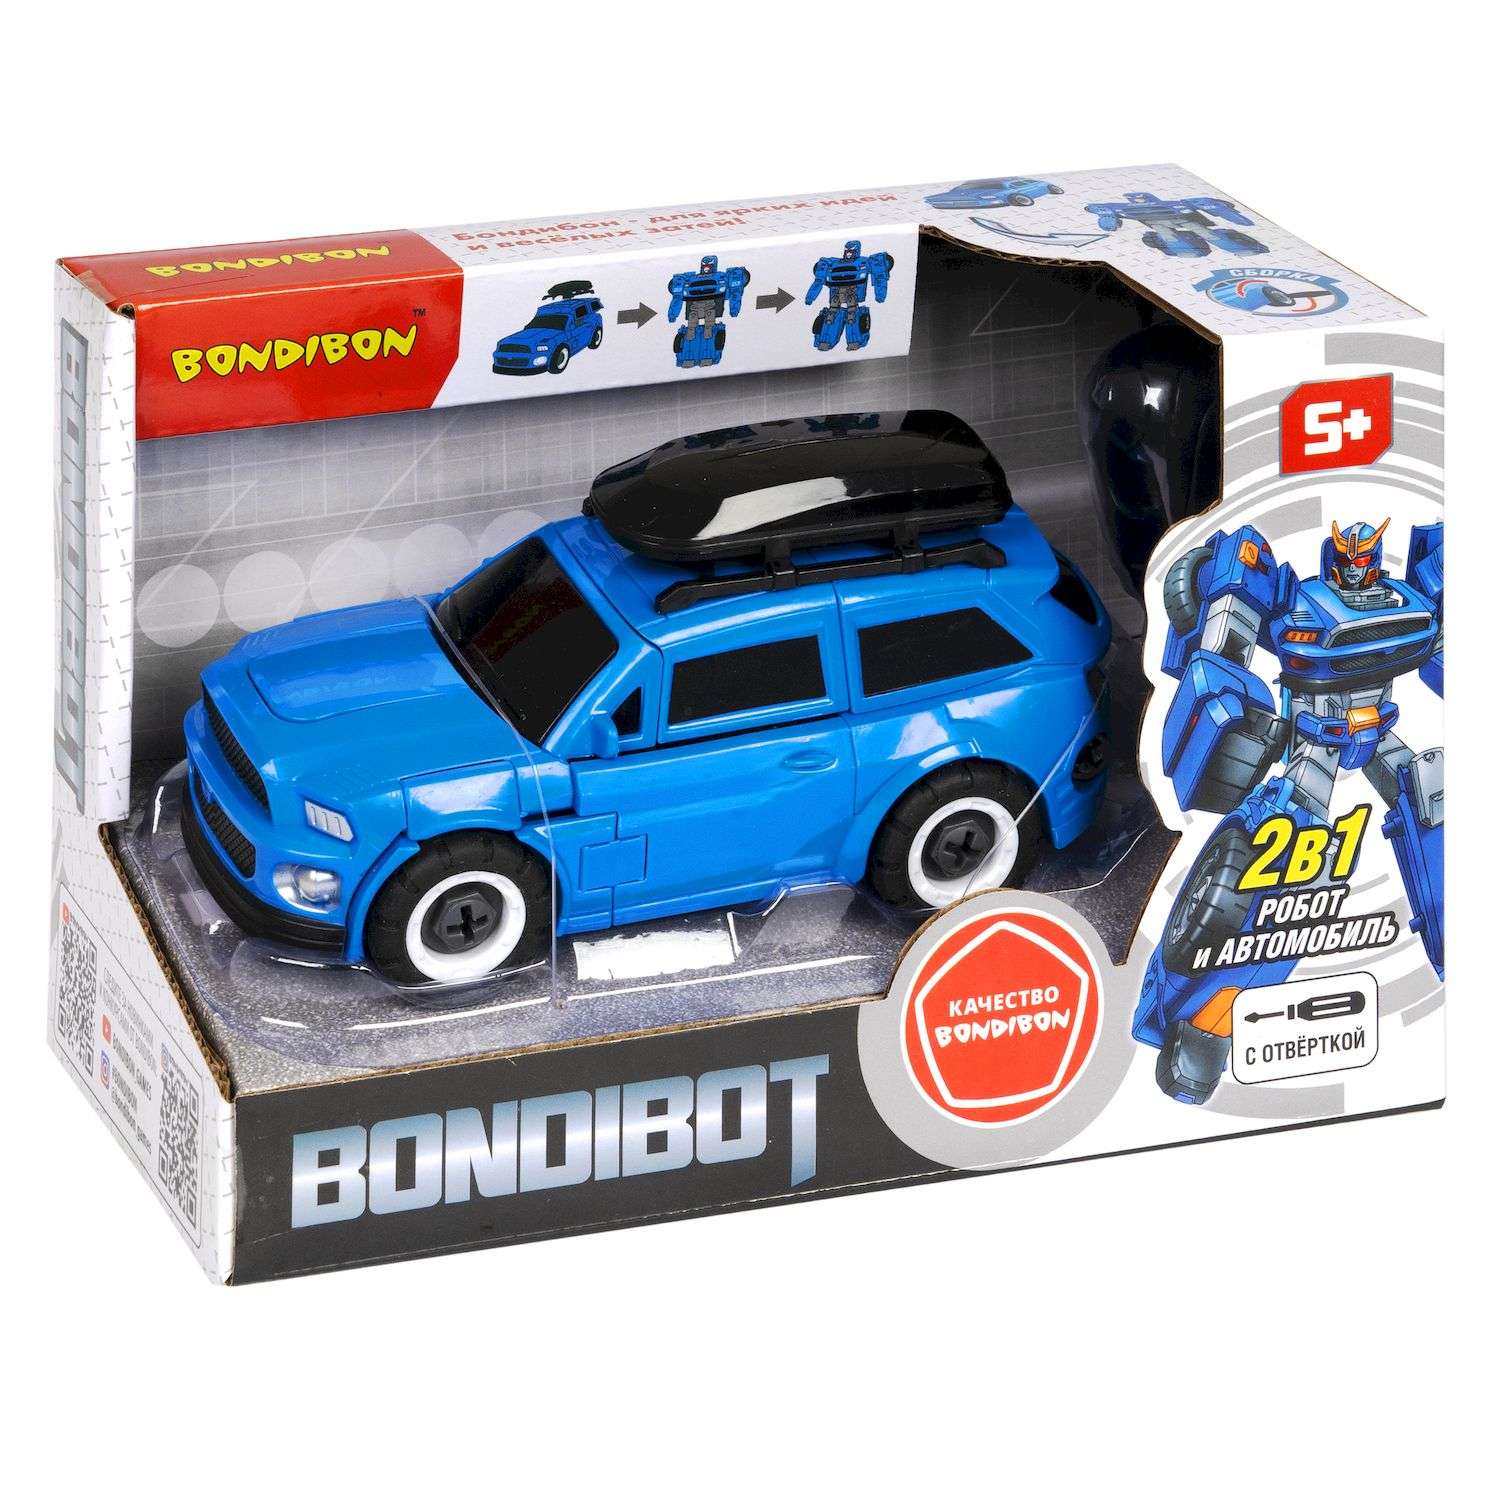 Трансформер BONDIBON Bondibot Робот-автомобиль с отвёрткой 2 в 1 джип синего цвета - фото 3